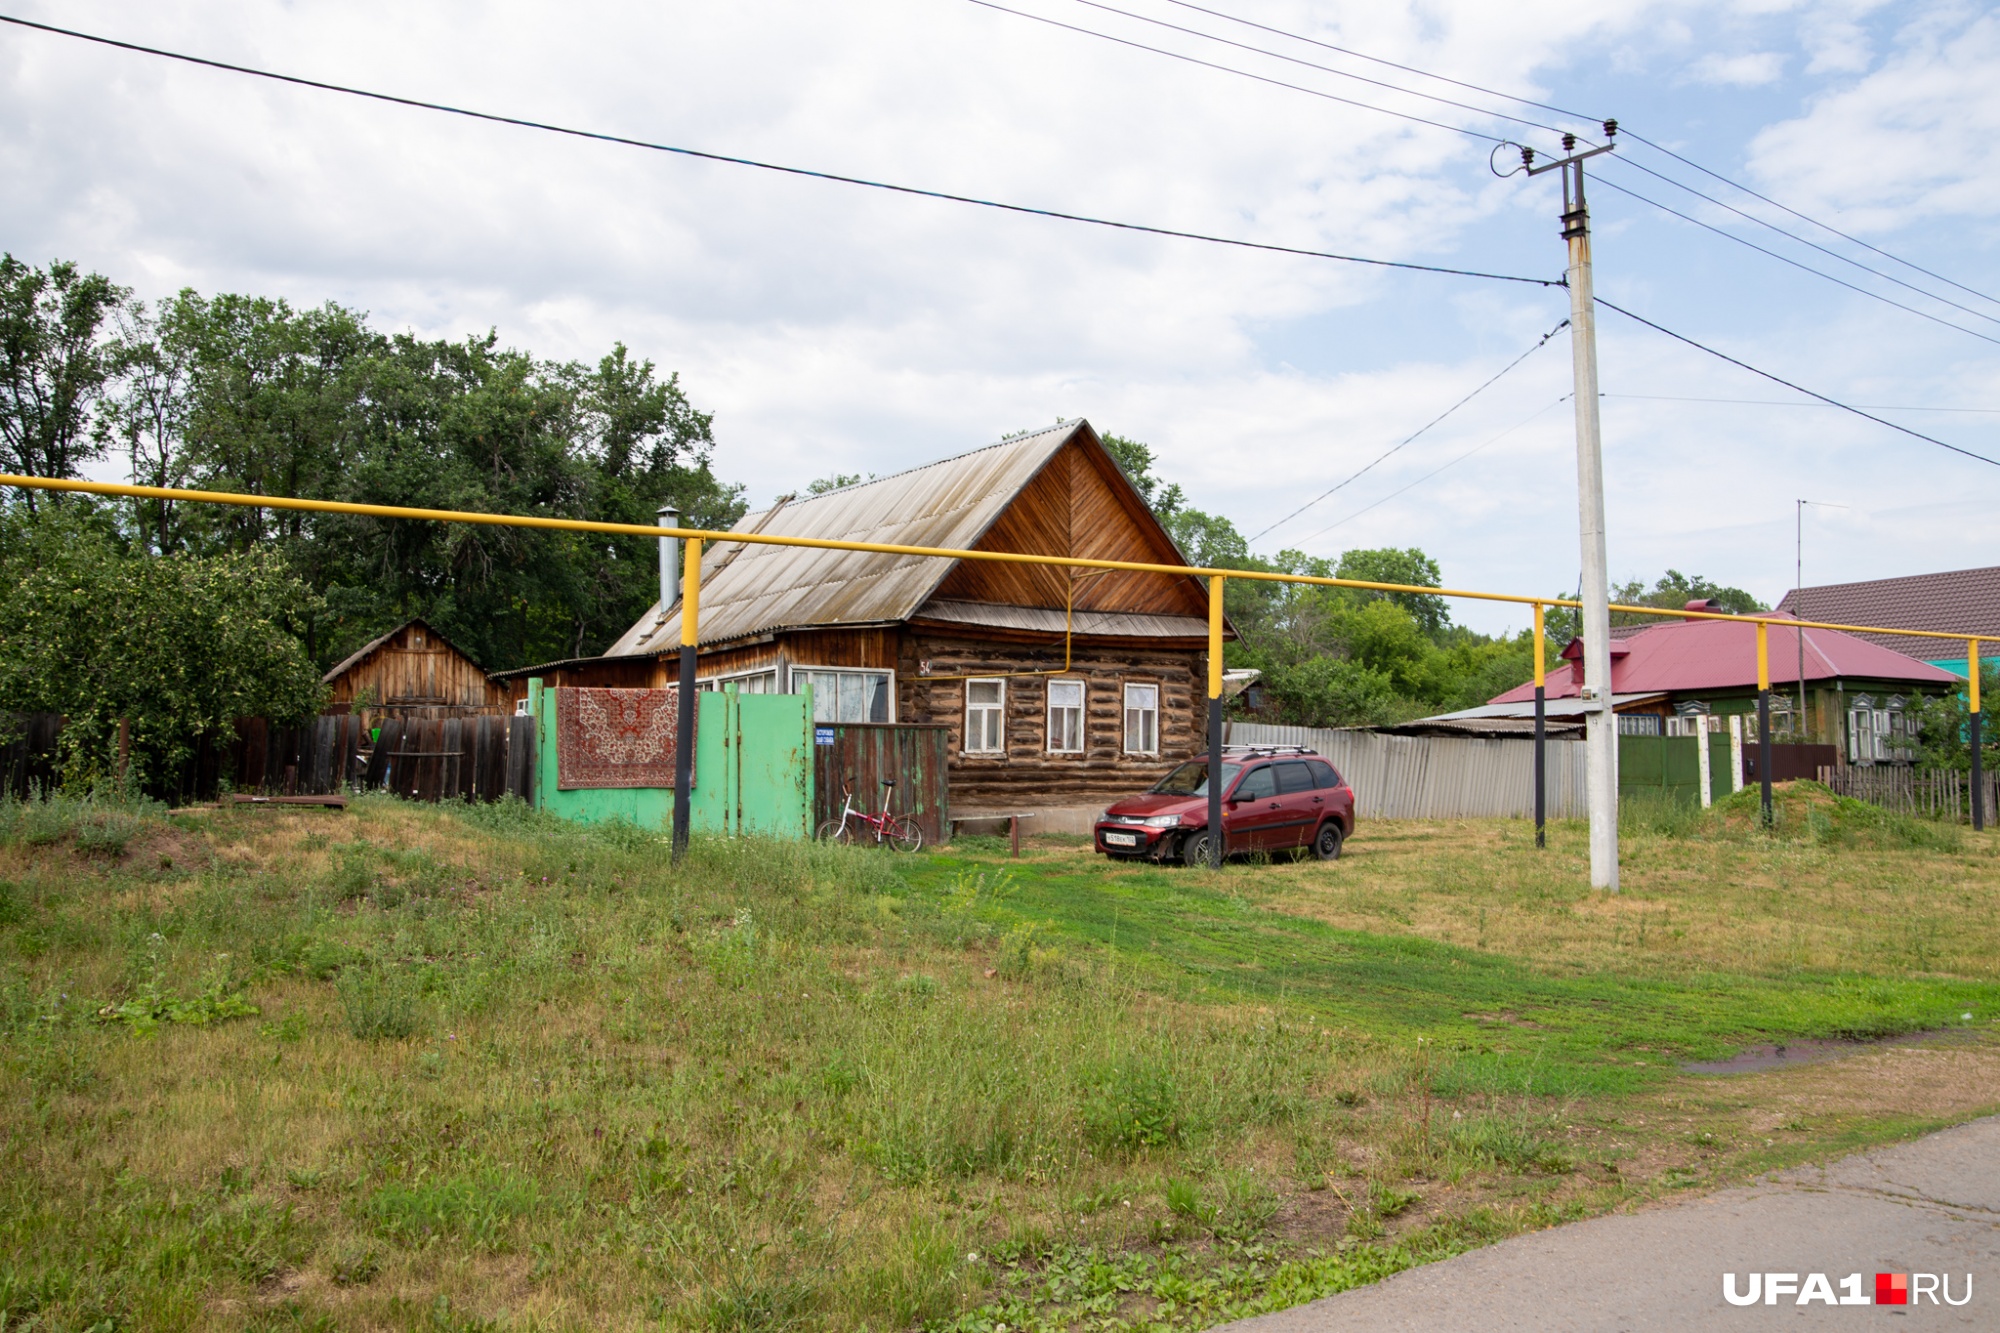 Дома у всех в основном советской постройки